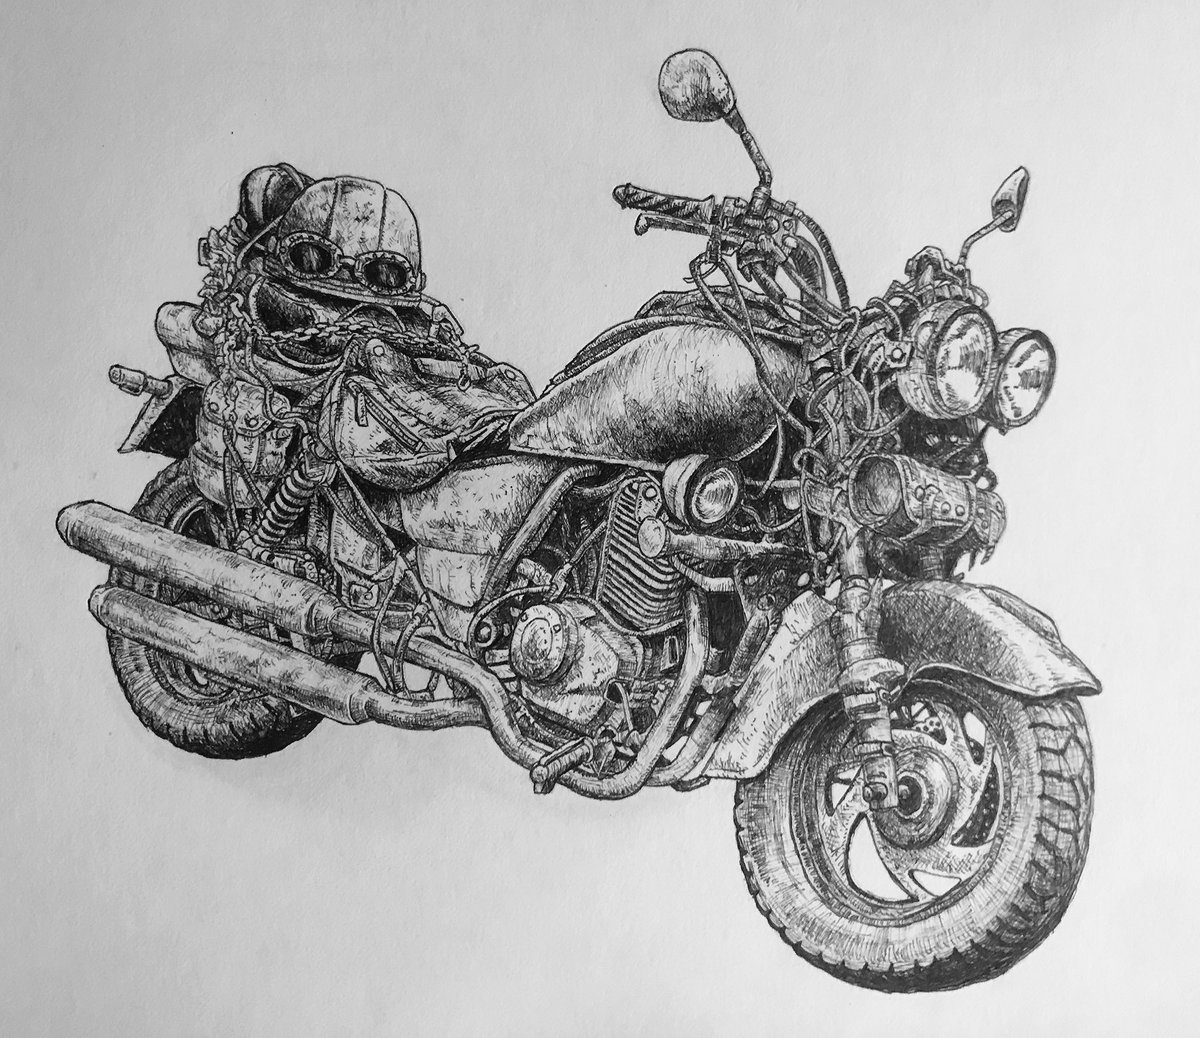 インスタには載せてたんですけど、ツイッターにはまだだったので公開。
結構頑張ってバイク描きました…!
#ペン画を流してペン画民を増やそう 
#少しでもいいと思ったらRT 
#バイク乗りと繋がりたい 